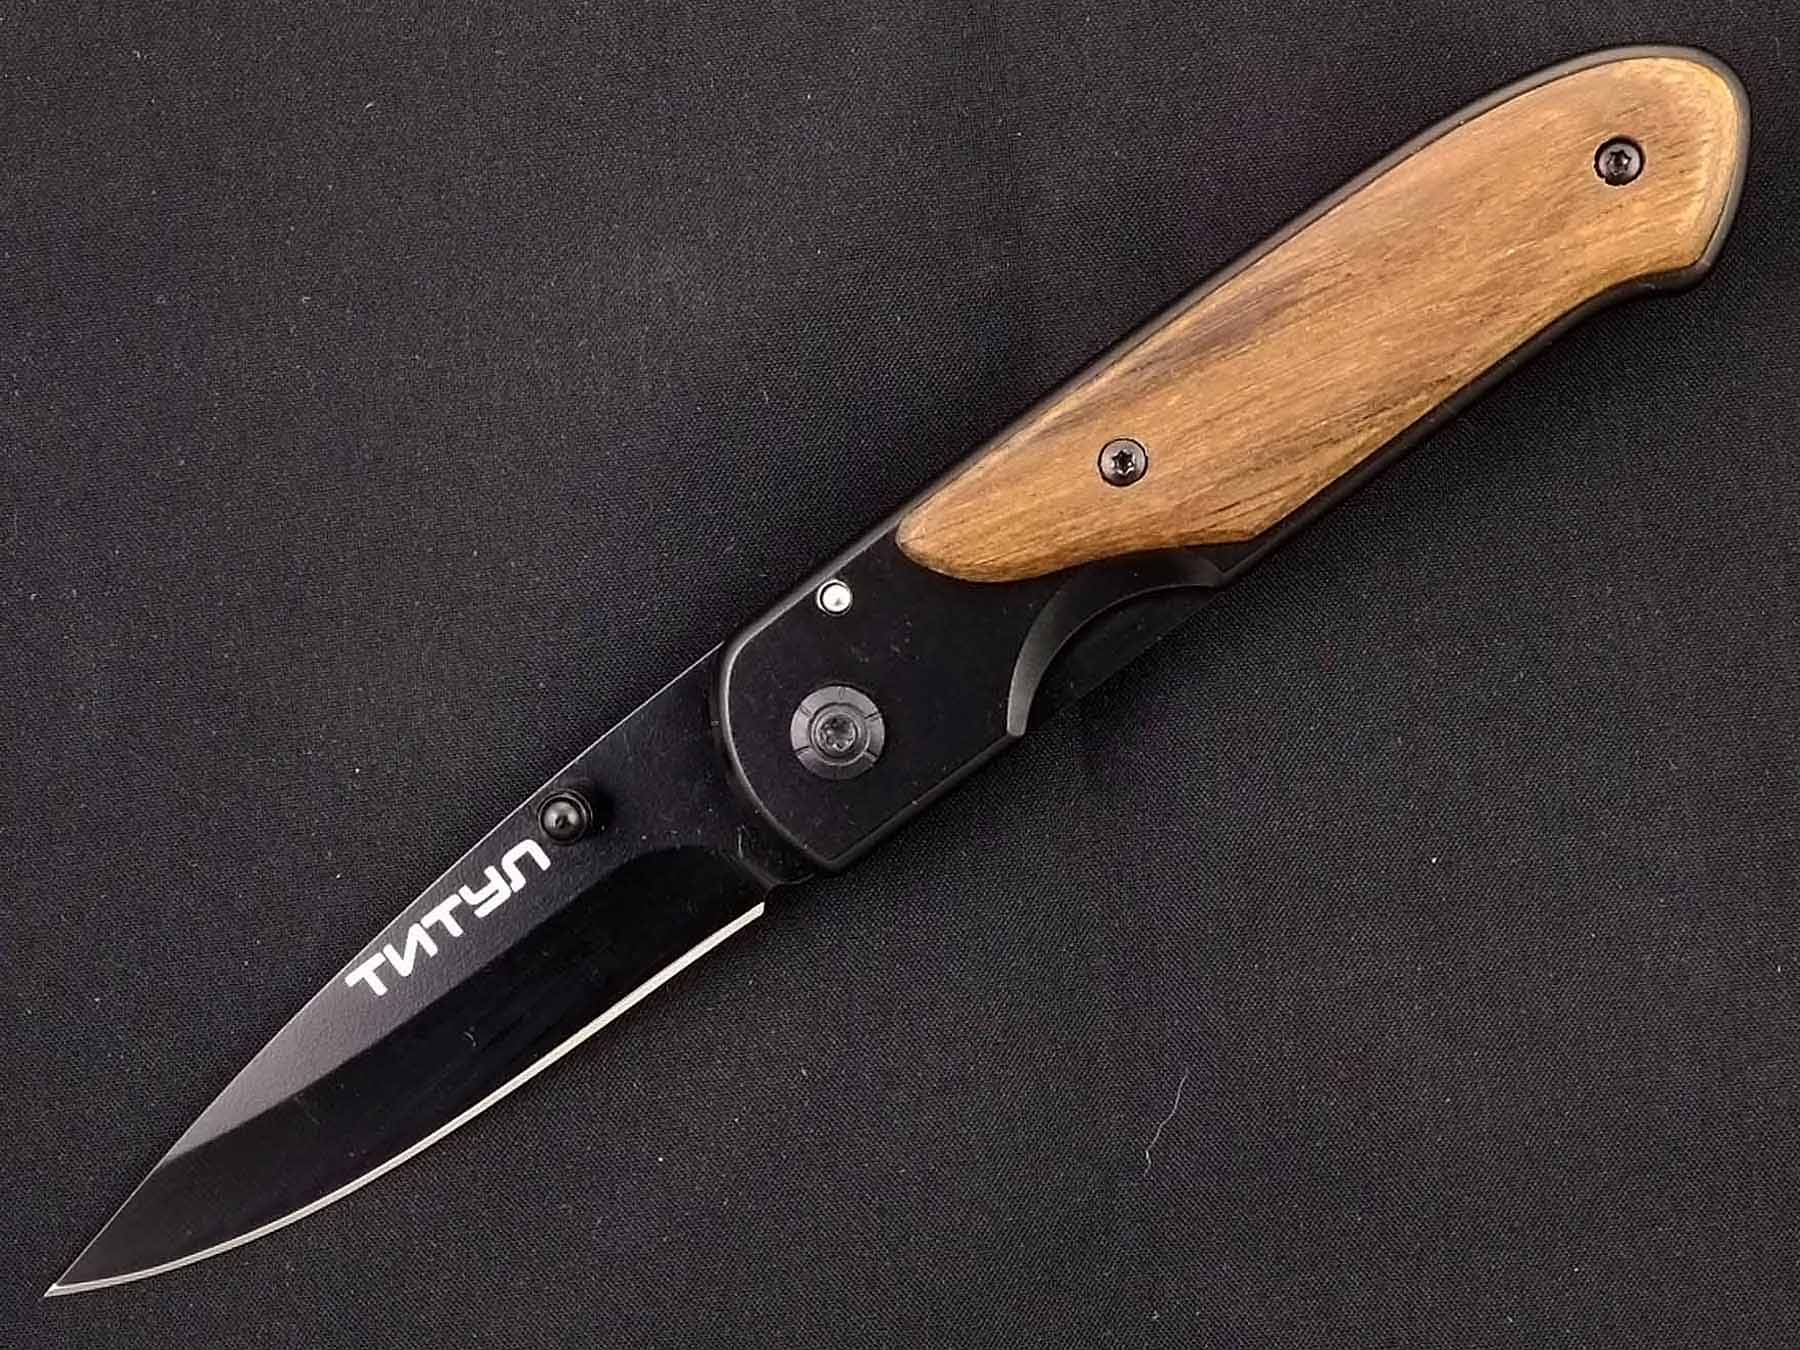 Нож Складной C-230